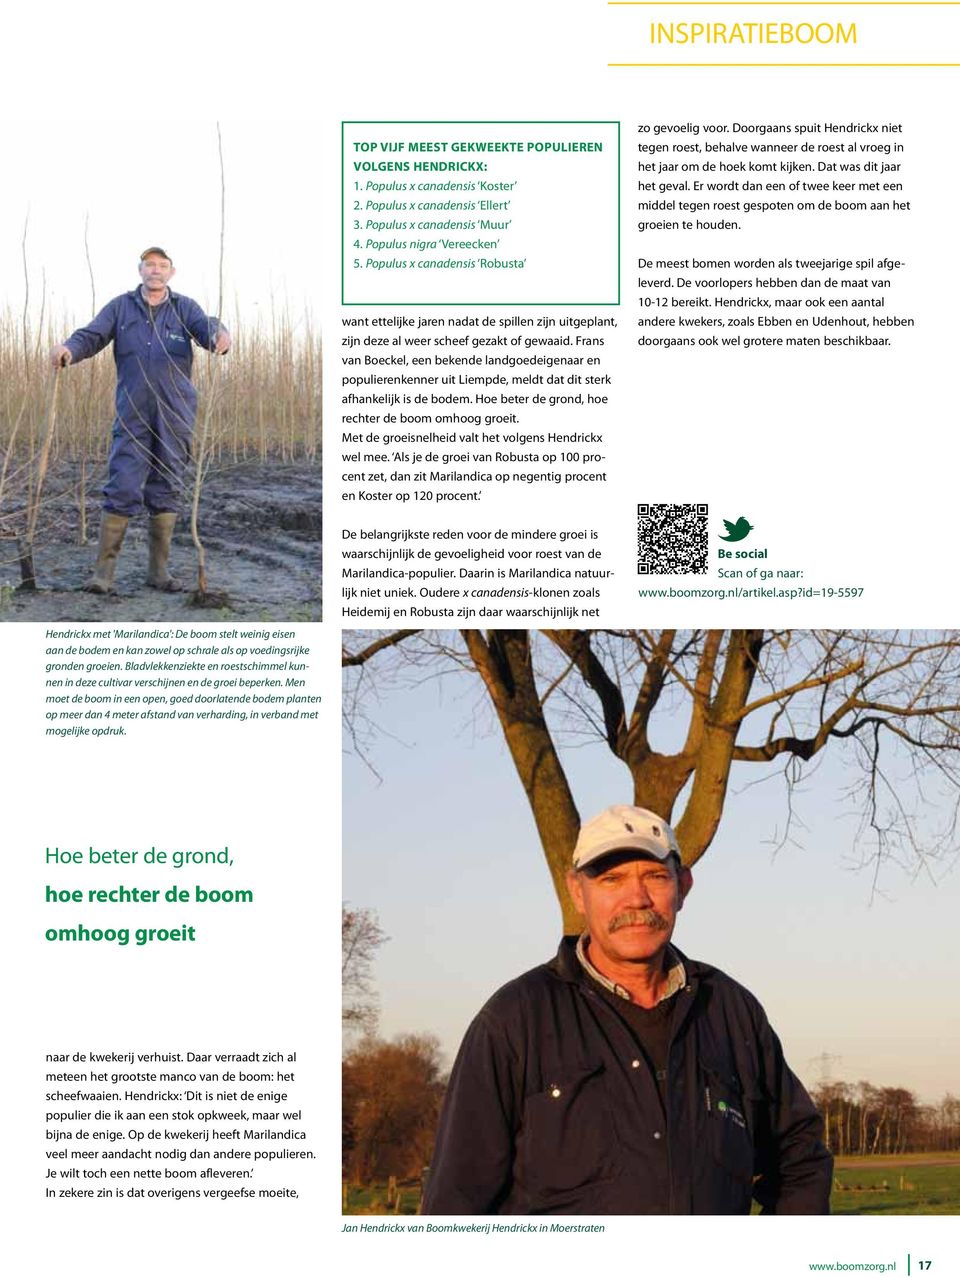 Frans van Boeckel, een bekende landgoedeigenaar en populierenkenner uit Liempde, meldt dat dit sterk afhankelijk is de bodem. Hoe beter de grond, hoe rechter de boom omhoog groeit.